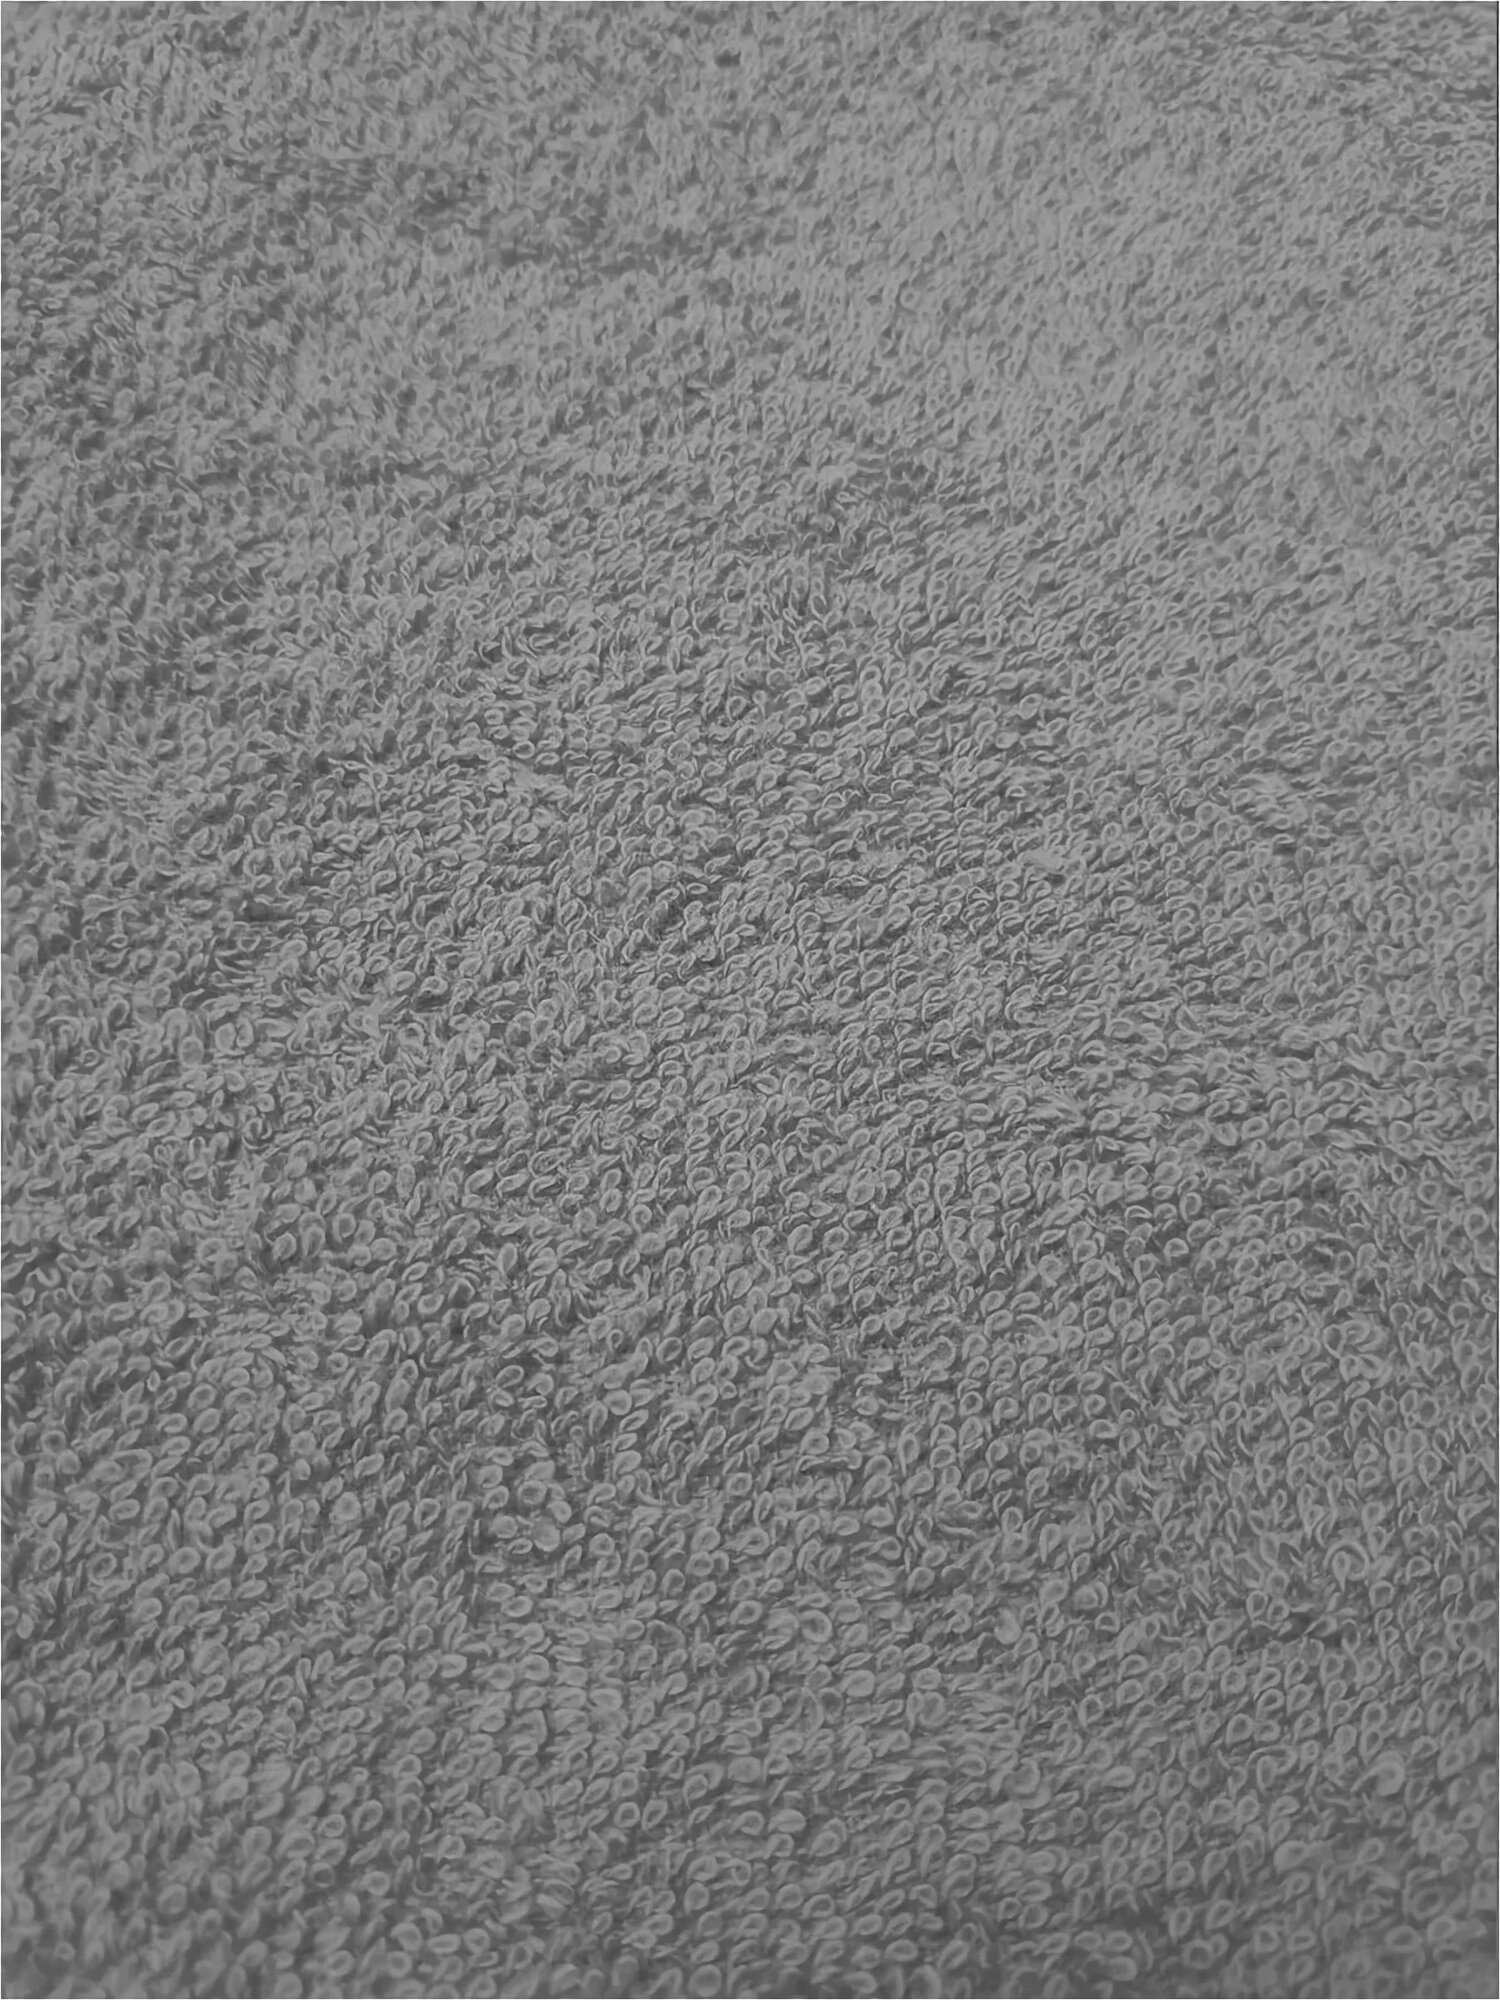 Полотенце (Салфетка) Махровое Кухонное Серое 30х30 (10 шт) 100% Хлопок маленькое полотенце для рук/лица, посуды, сервировки стола - фотография № 3